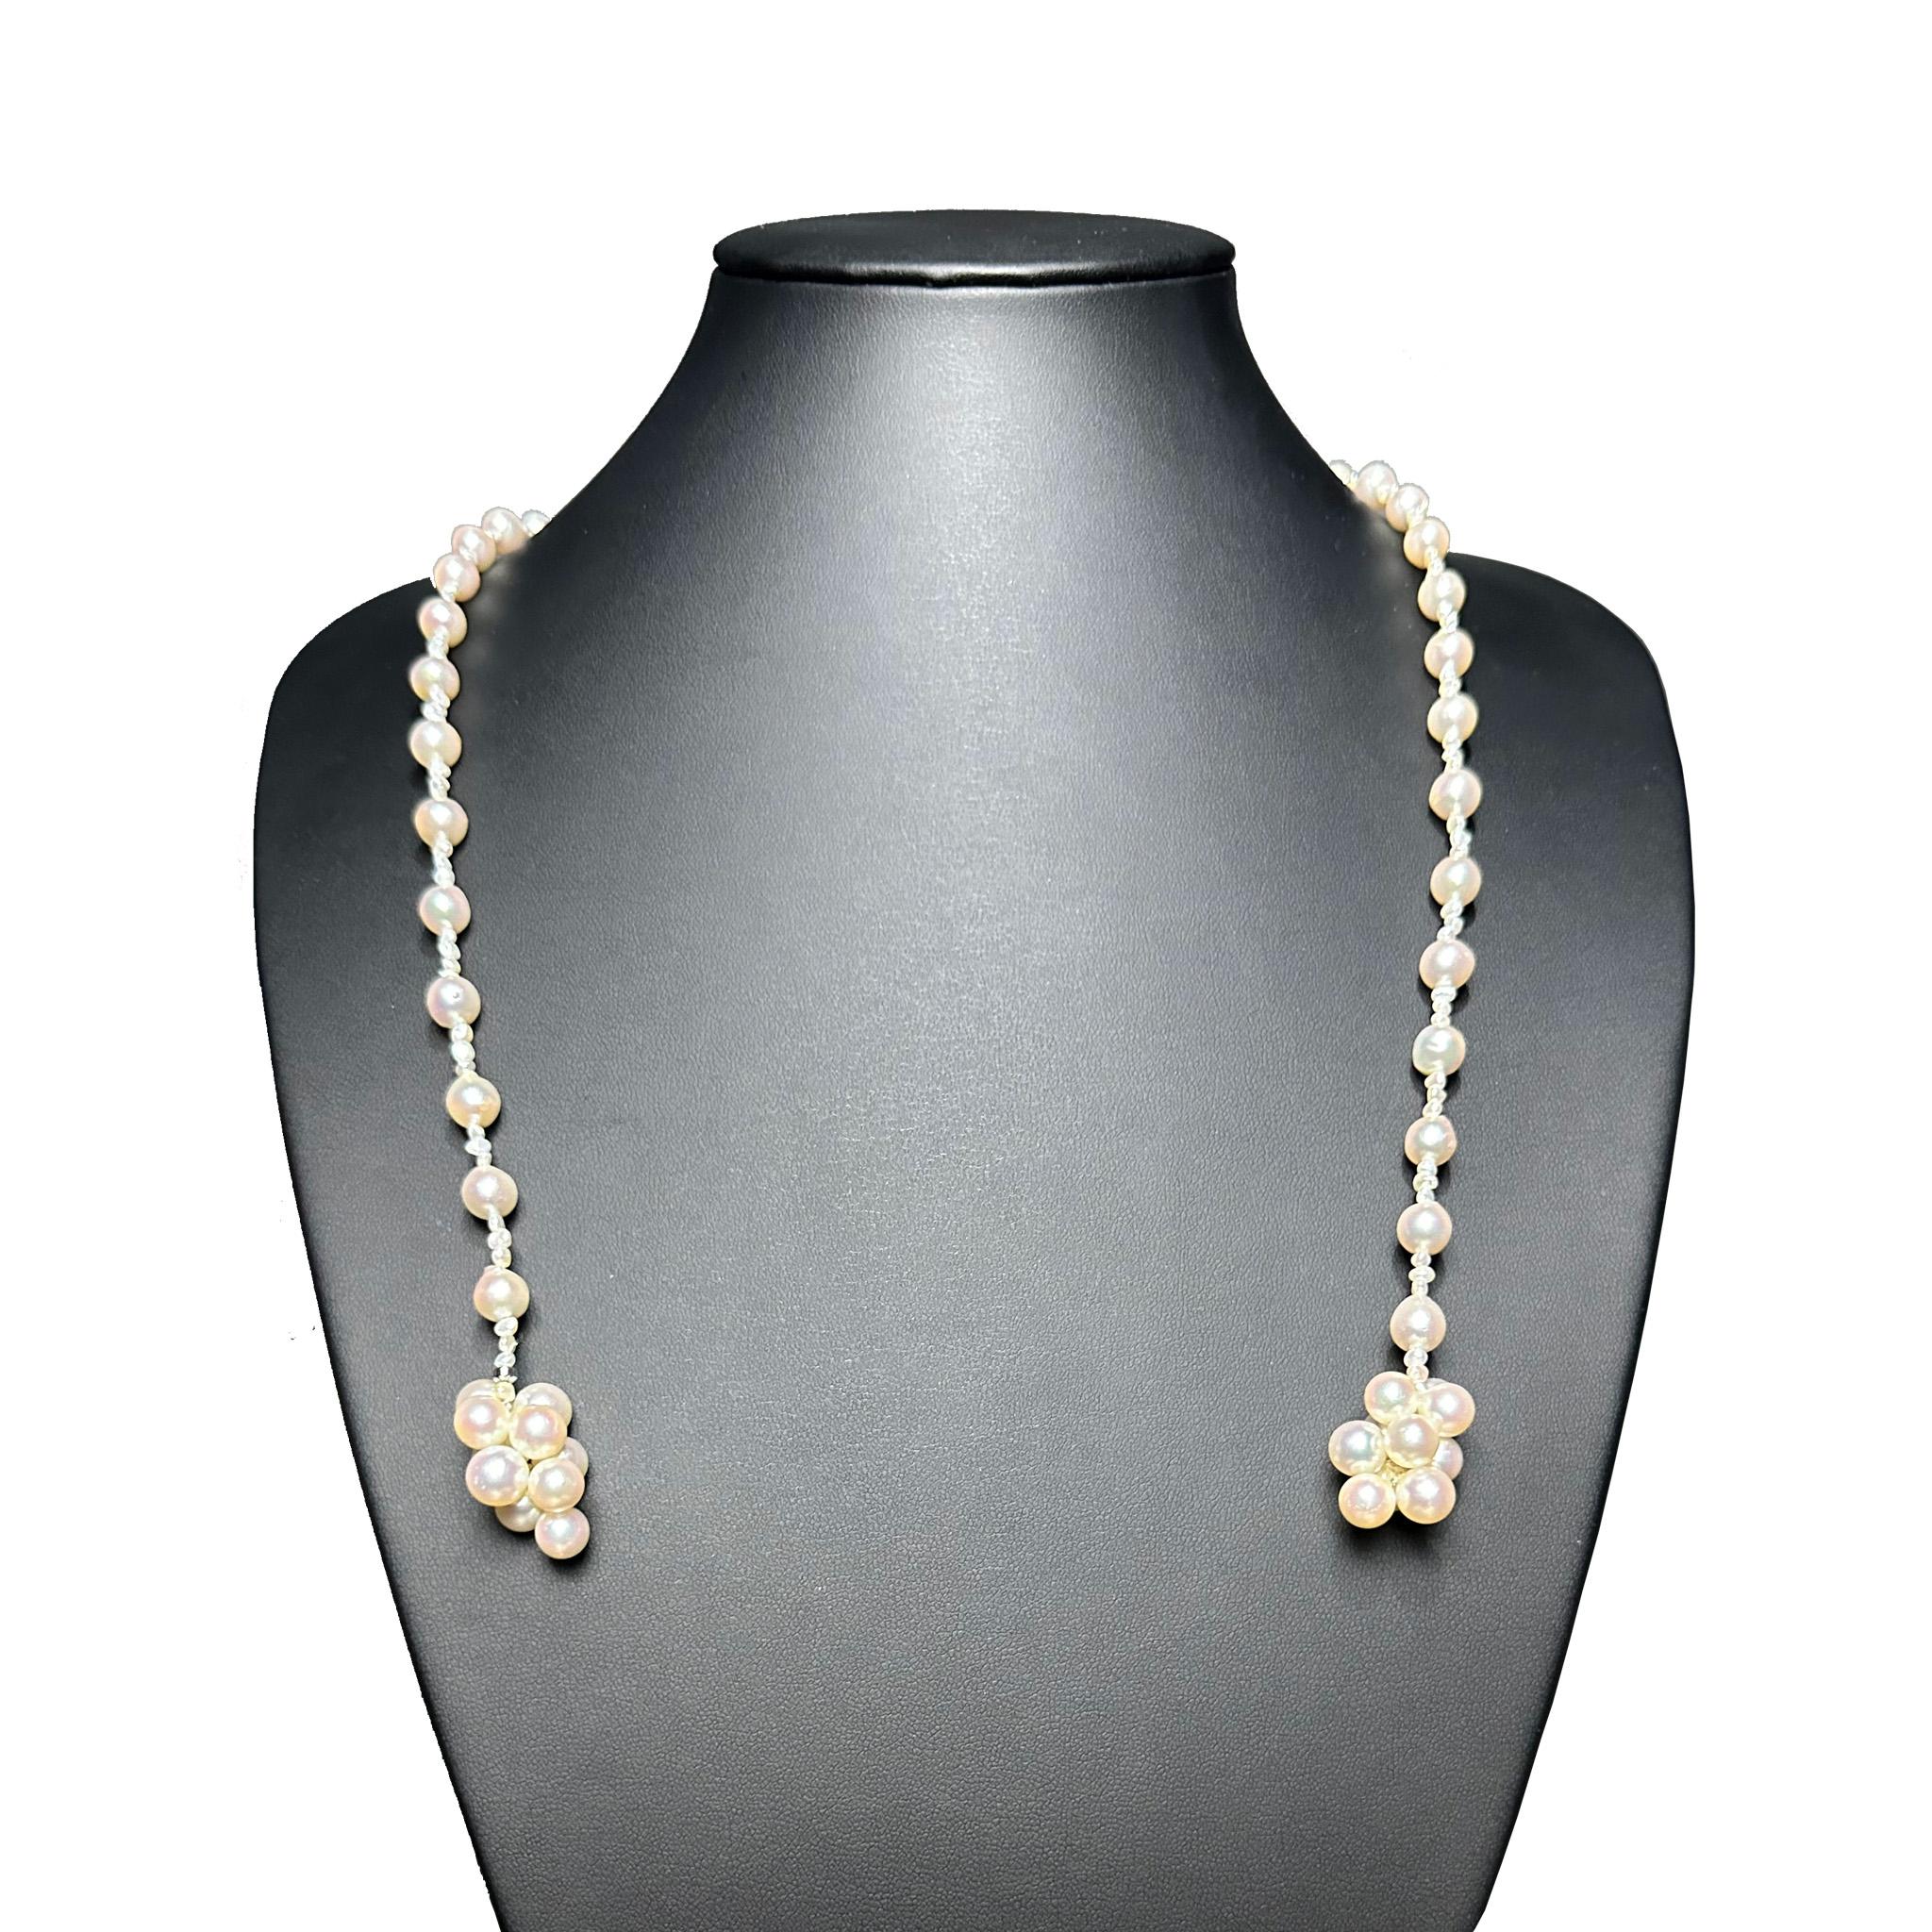 Créateur : IRIS PARURE
Ferme perlière : Ehime, Uwajima, JAPON
Caractéristiques : non coloré et non blanchi, BENI AKOYA®.
Taille de la perle : 7.0mm-7.50mm
Nombre de perles : 86

 Depuis sa création en 1953, IRIS PARURE fabrique des bijoux en perles